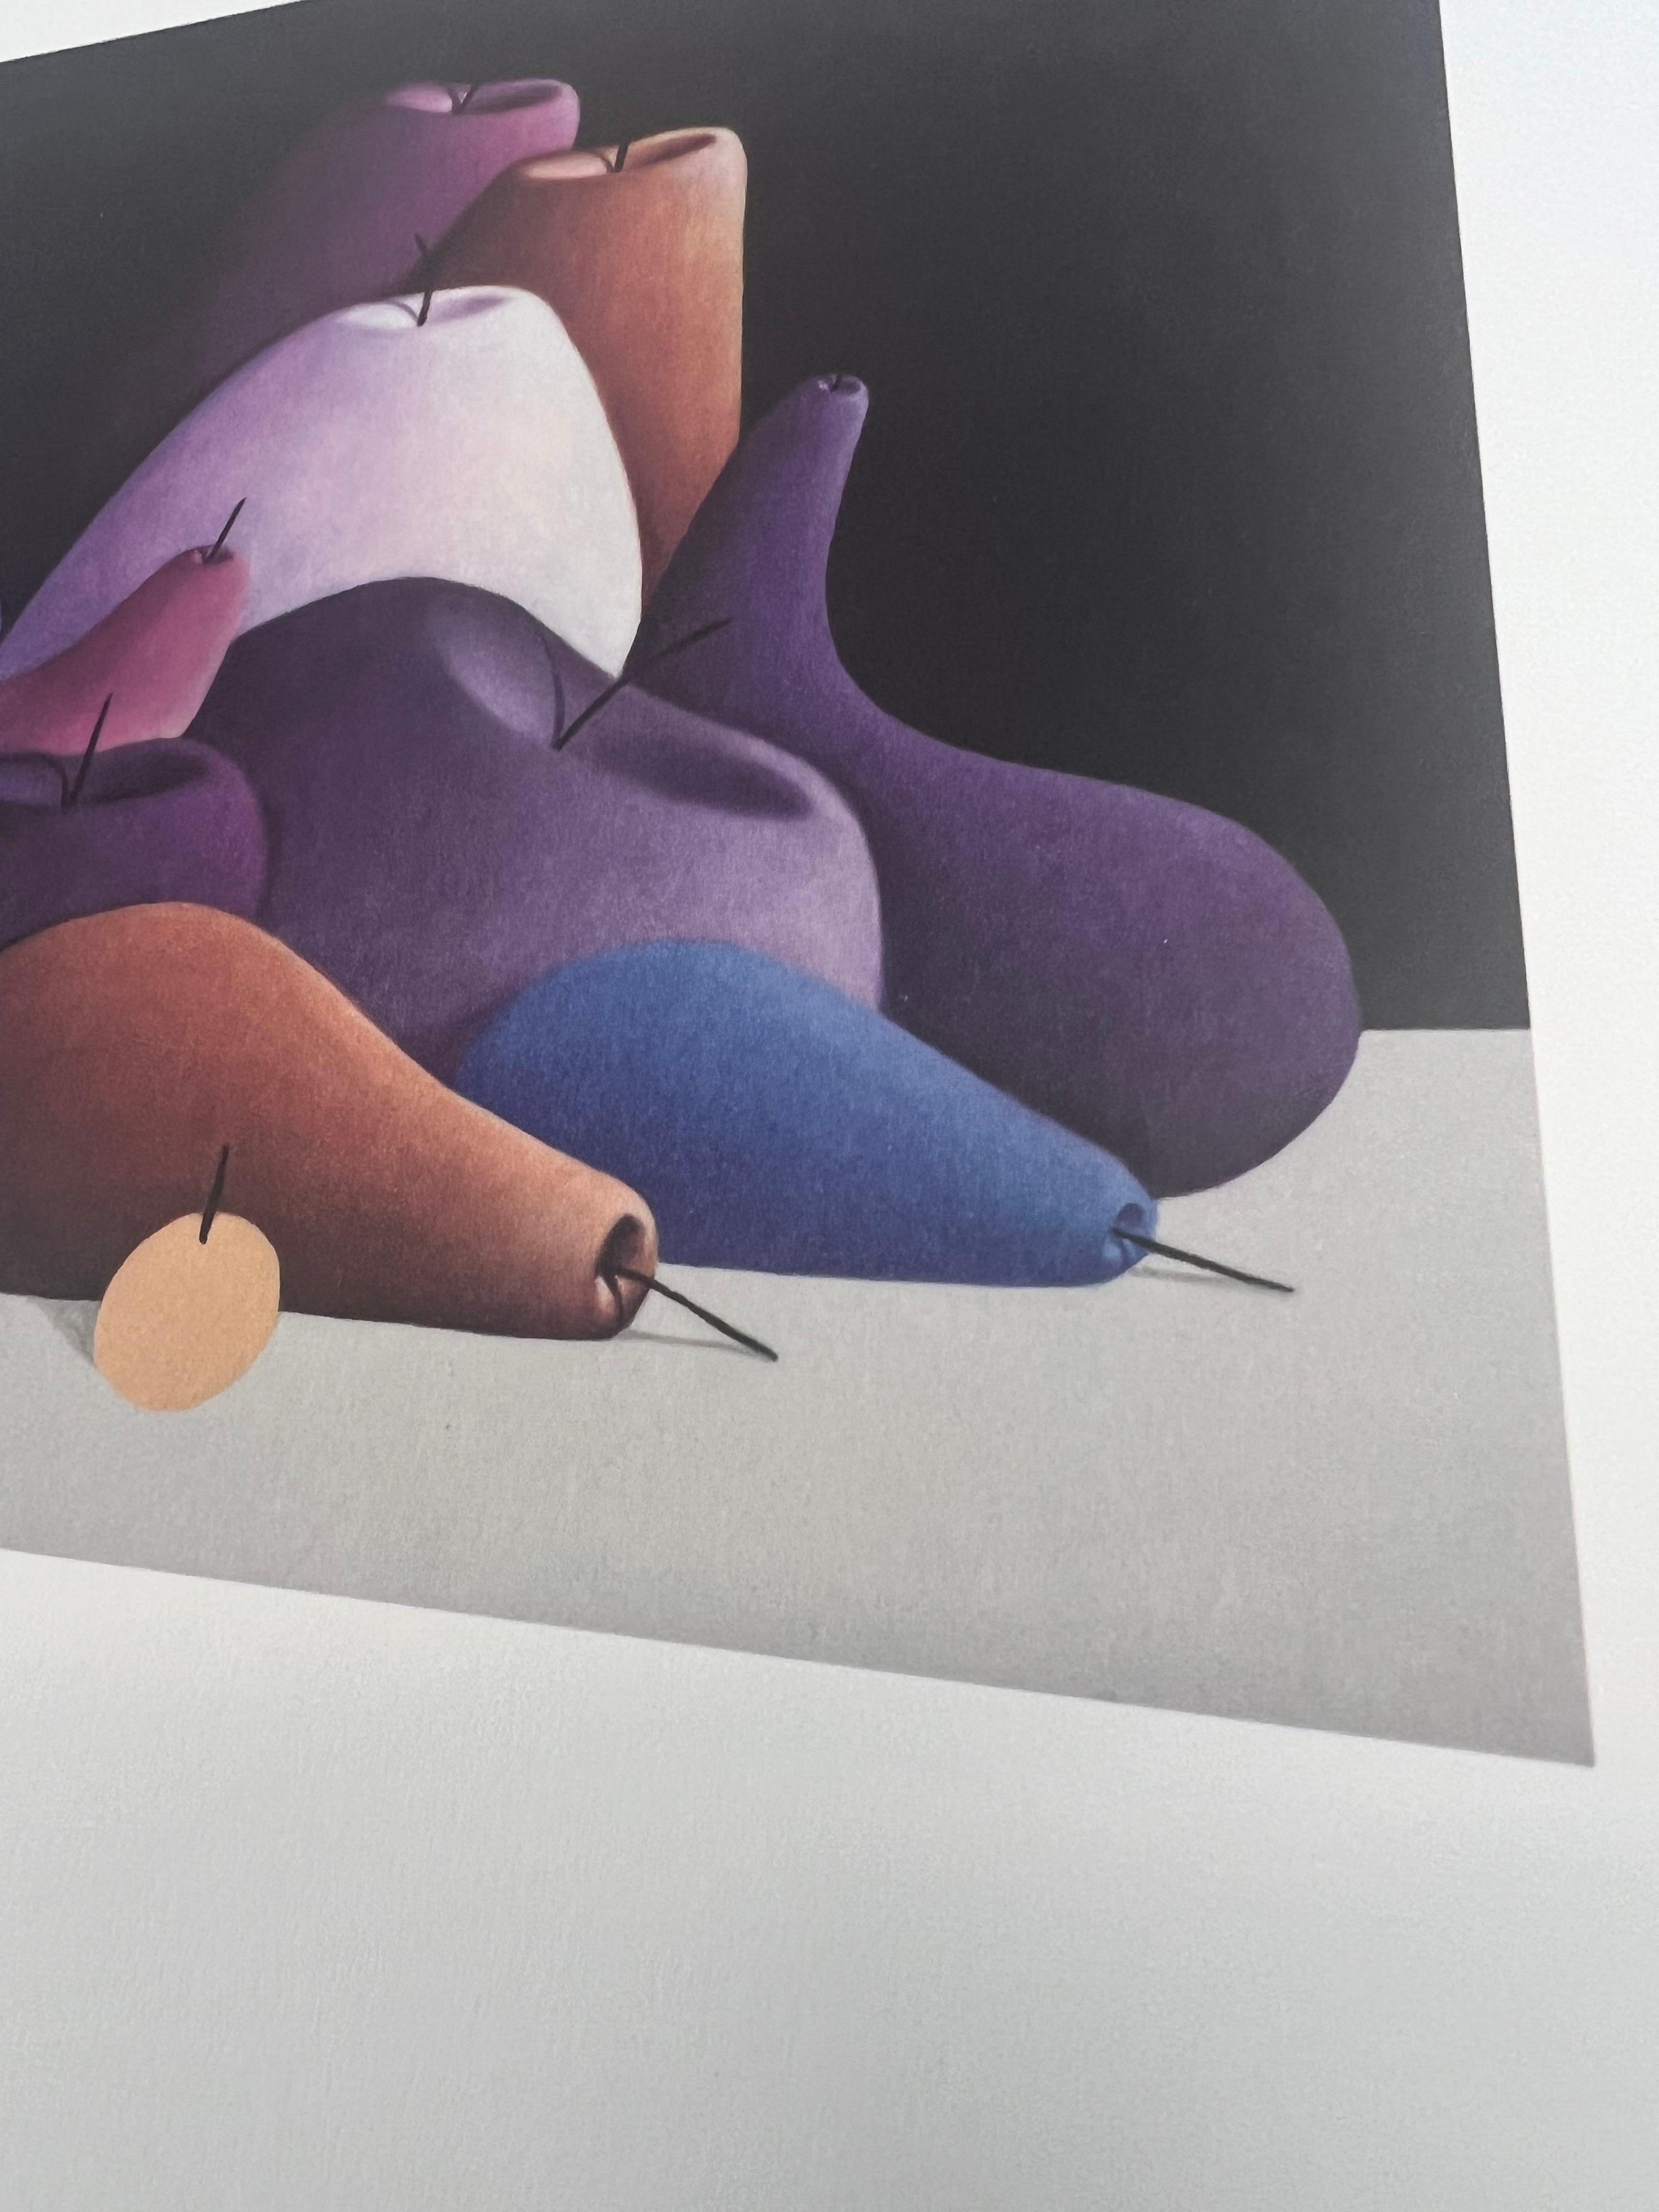 NICOLAS PARTY
STILLEBEN (BLAU), 2023
4-Farben-Offsetdruck auf dickem, mattem Papier.
30 × 30 cm
Auflage von 100 Stück

Produziert vom MUSEUM FRIEDER BURDA.